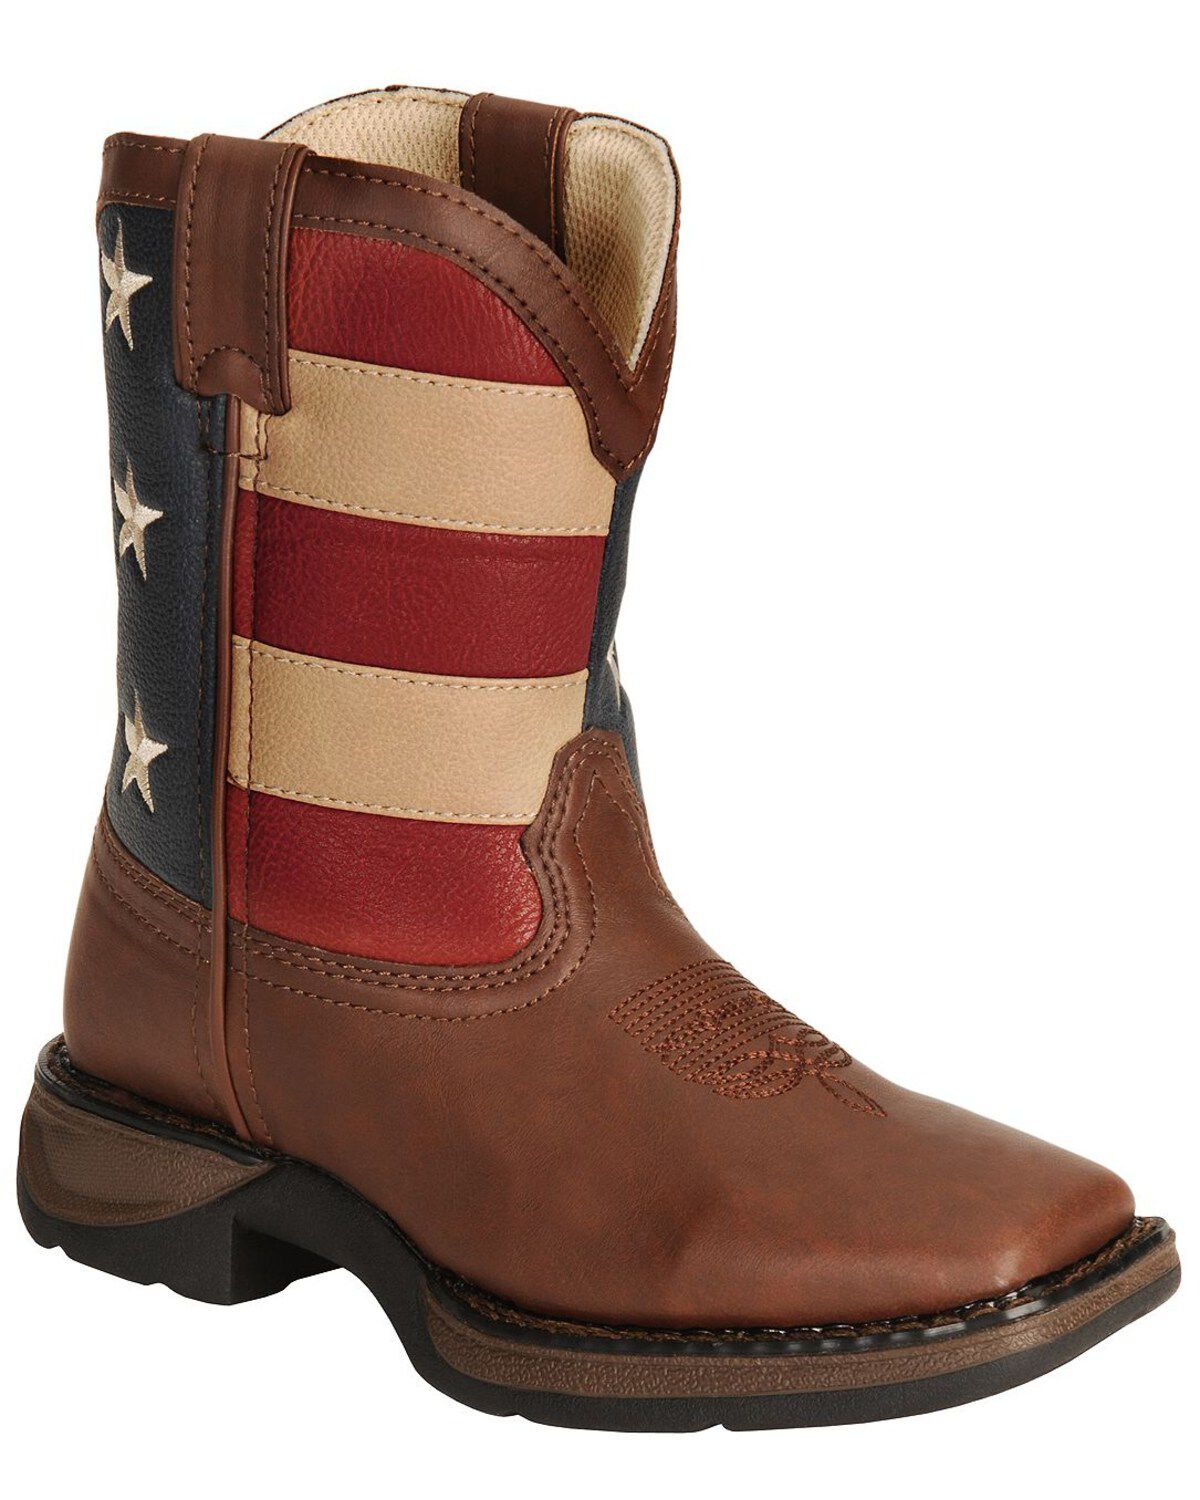 infant cowboy boots size 3